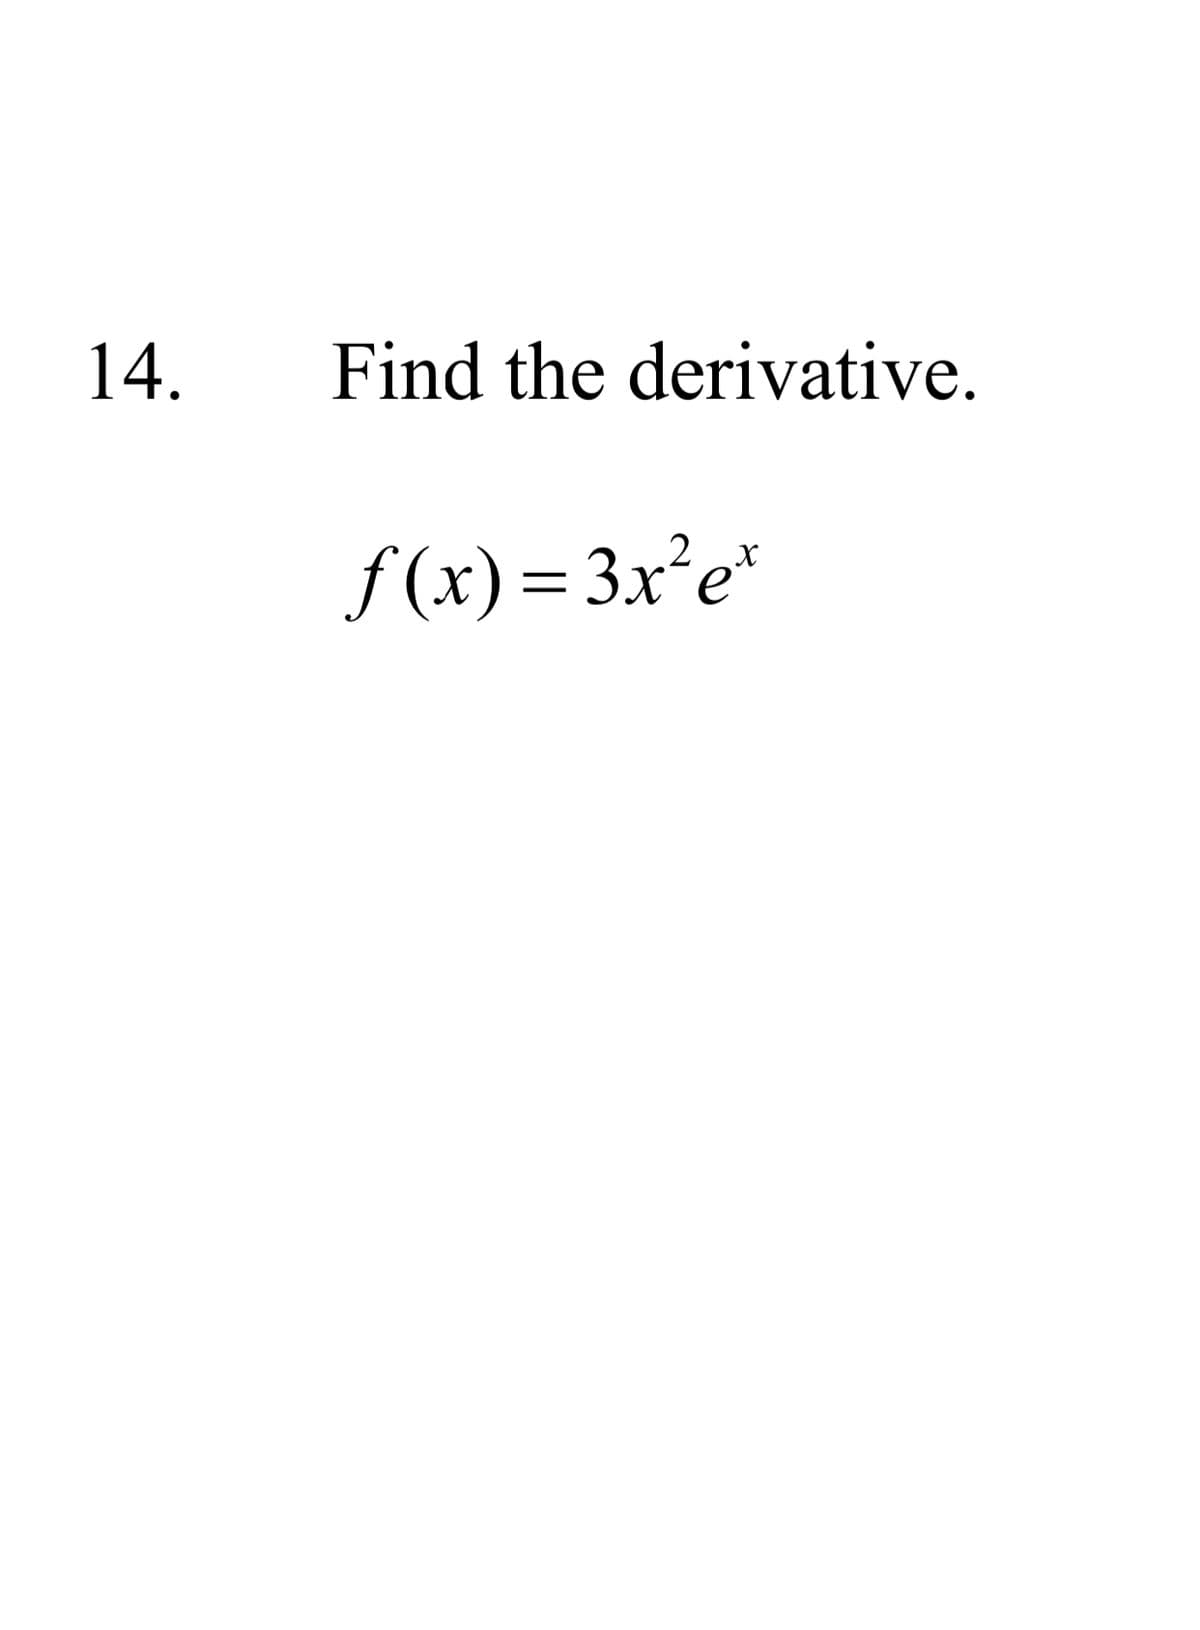 14.
Find the derivative.
f (x) = 3x²e*
